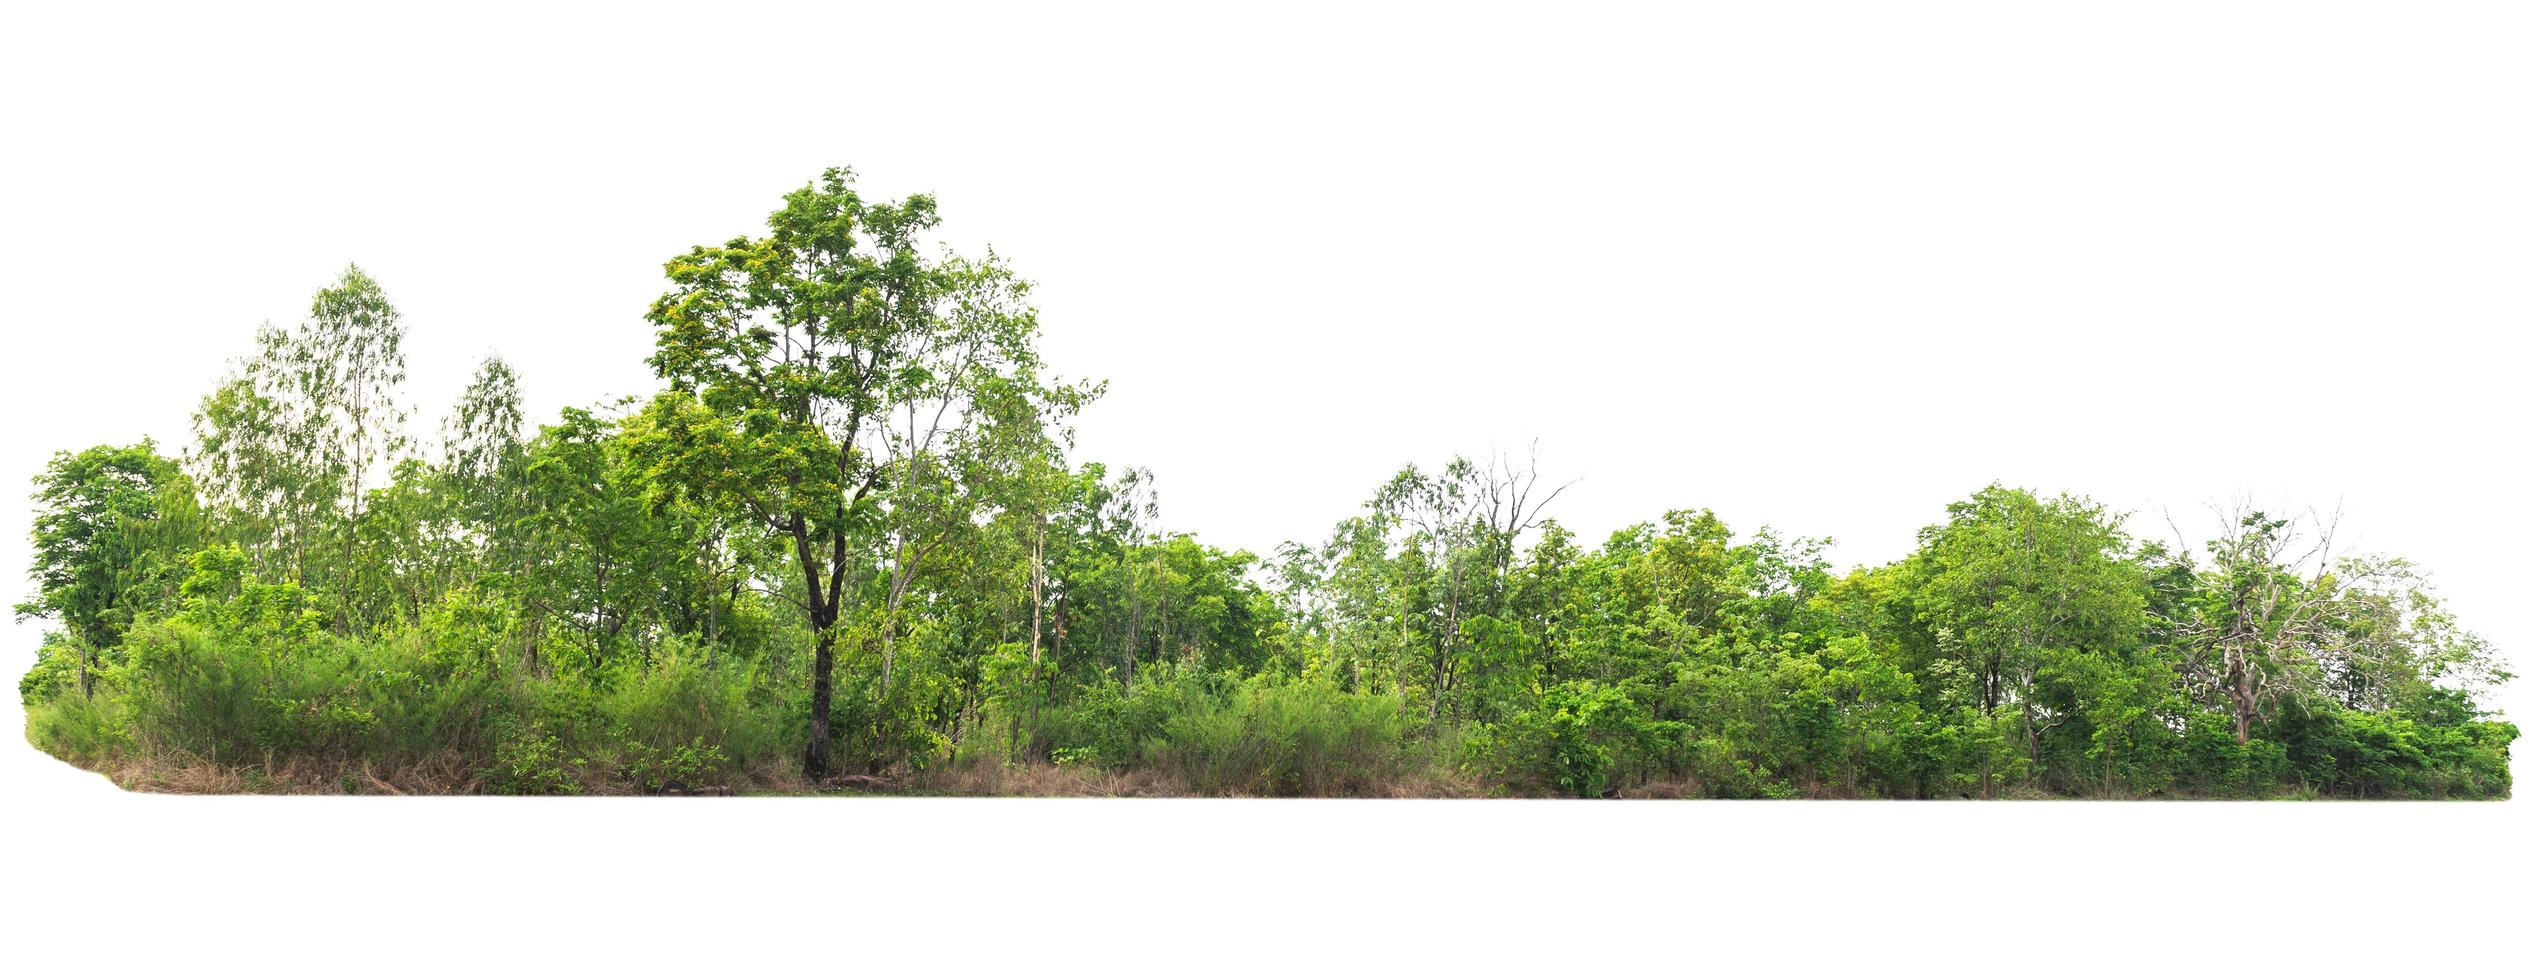 grupo árvore verde isolar no fundo branco foto